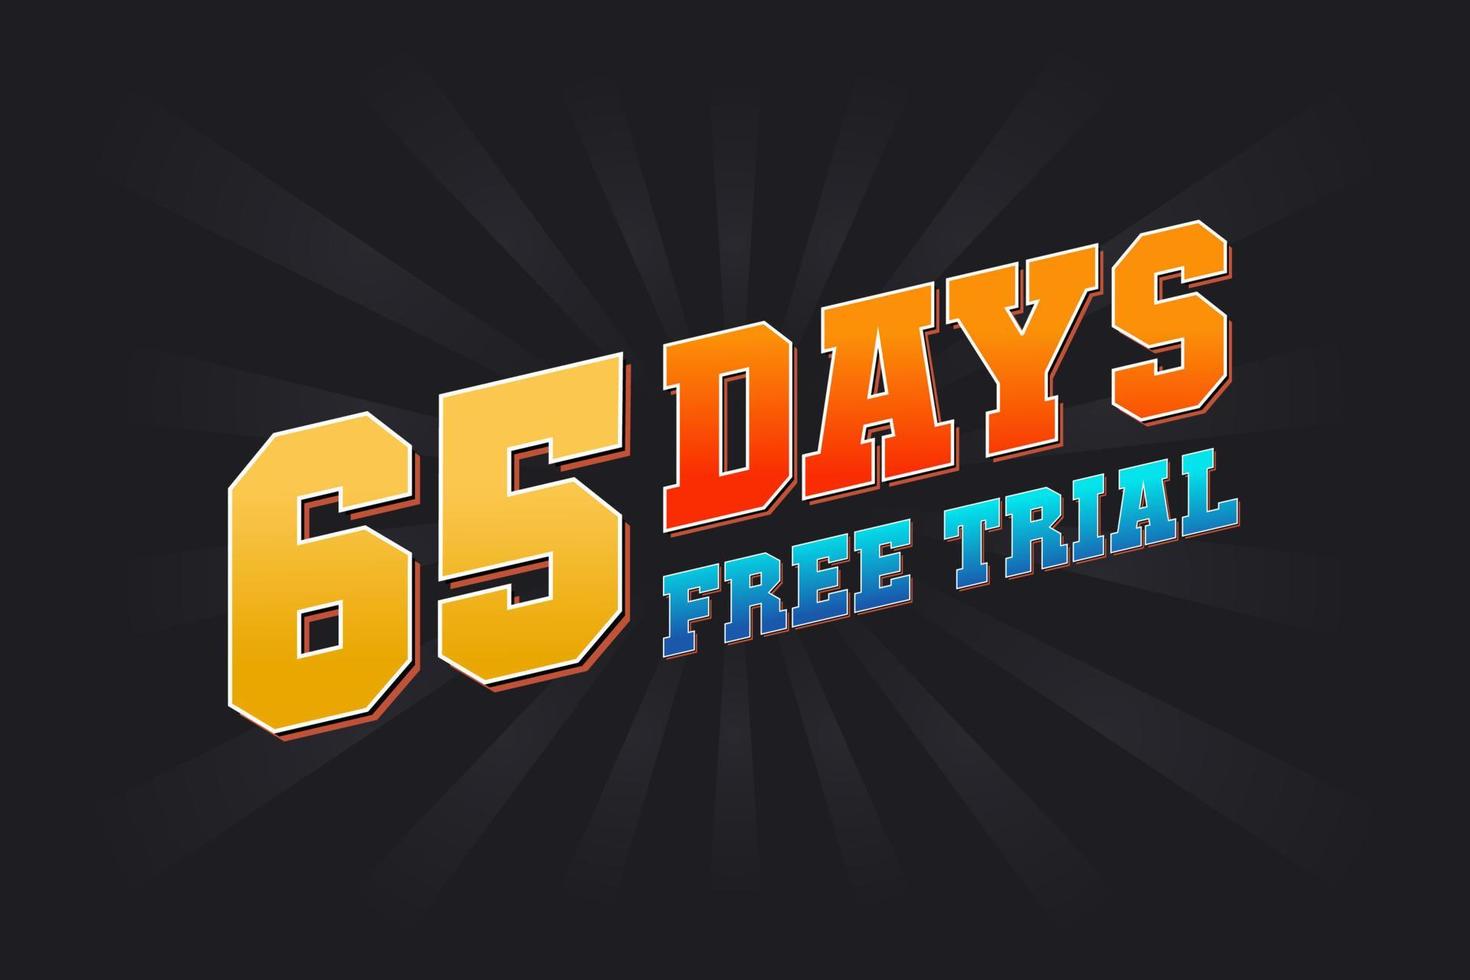 65 giorni gratuito prova promozionale grassetto testo azione vettore